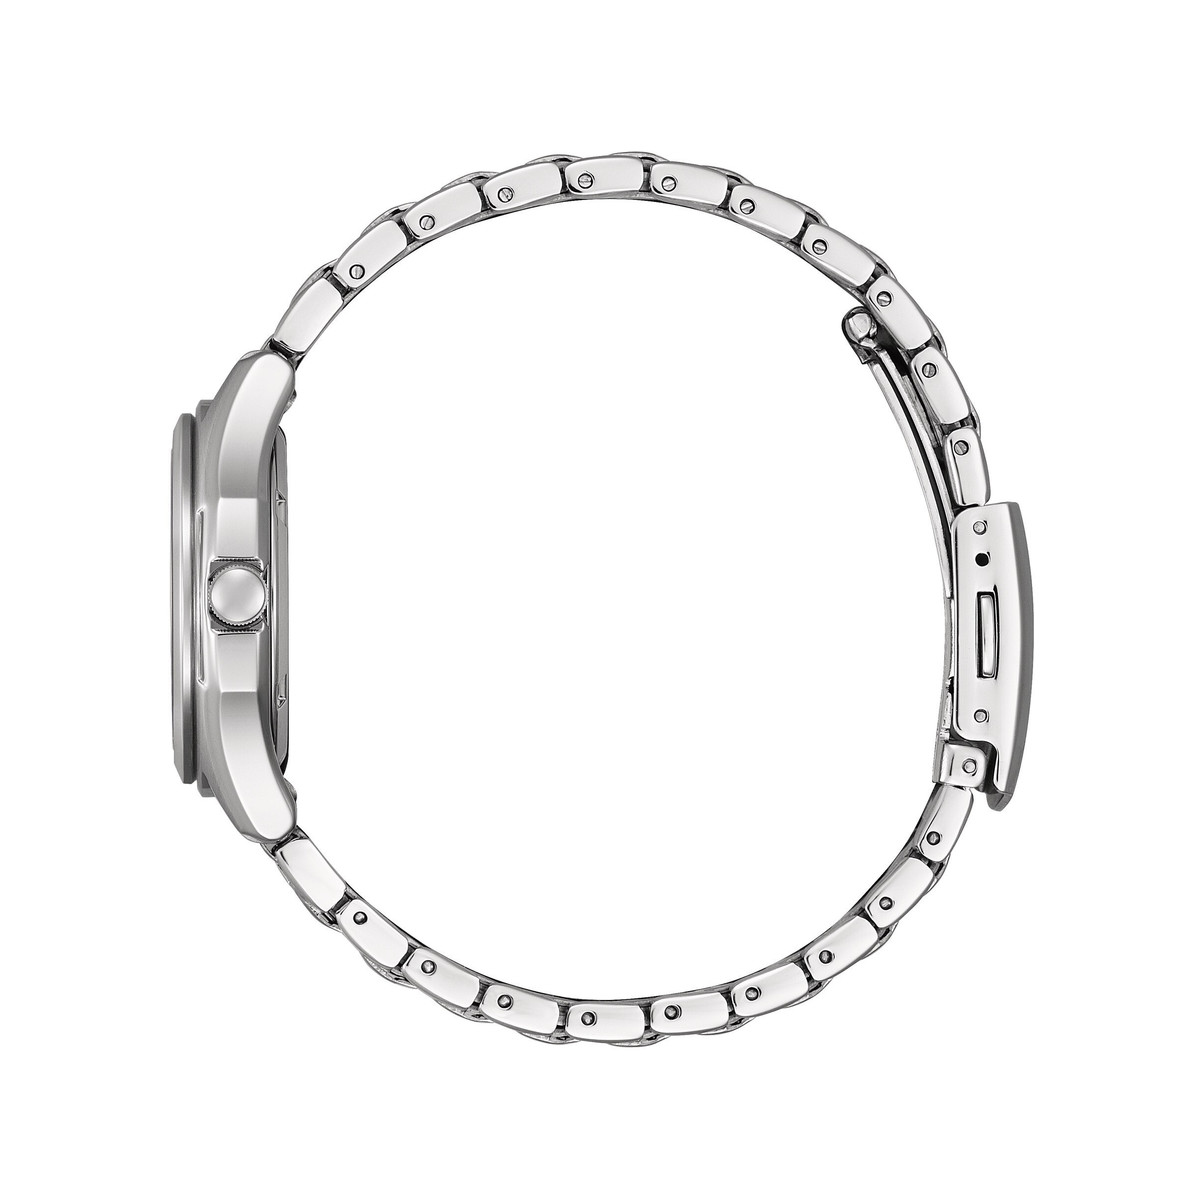 Montre CITIZEN platform classic femme eco-drive bracelet acier g - vue 2